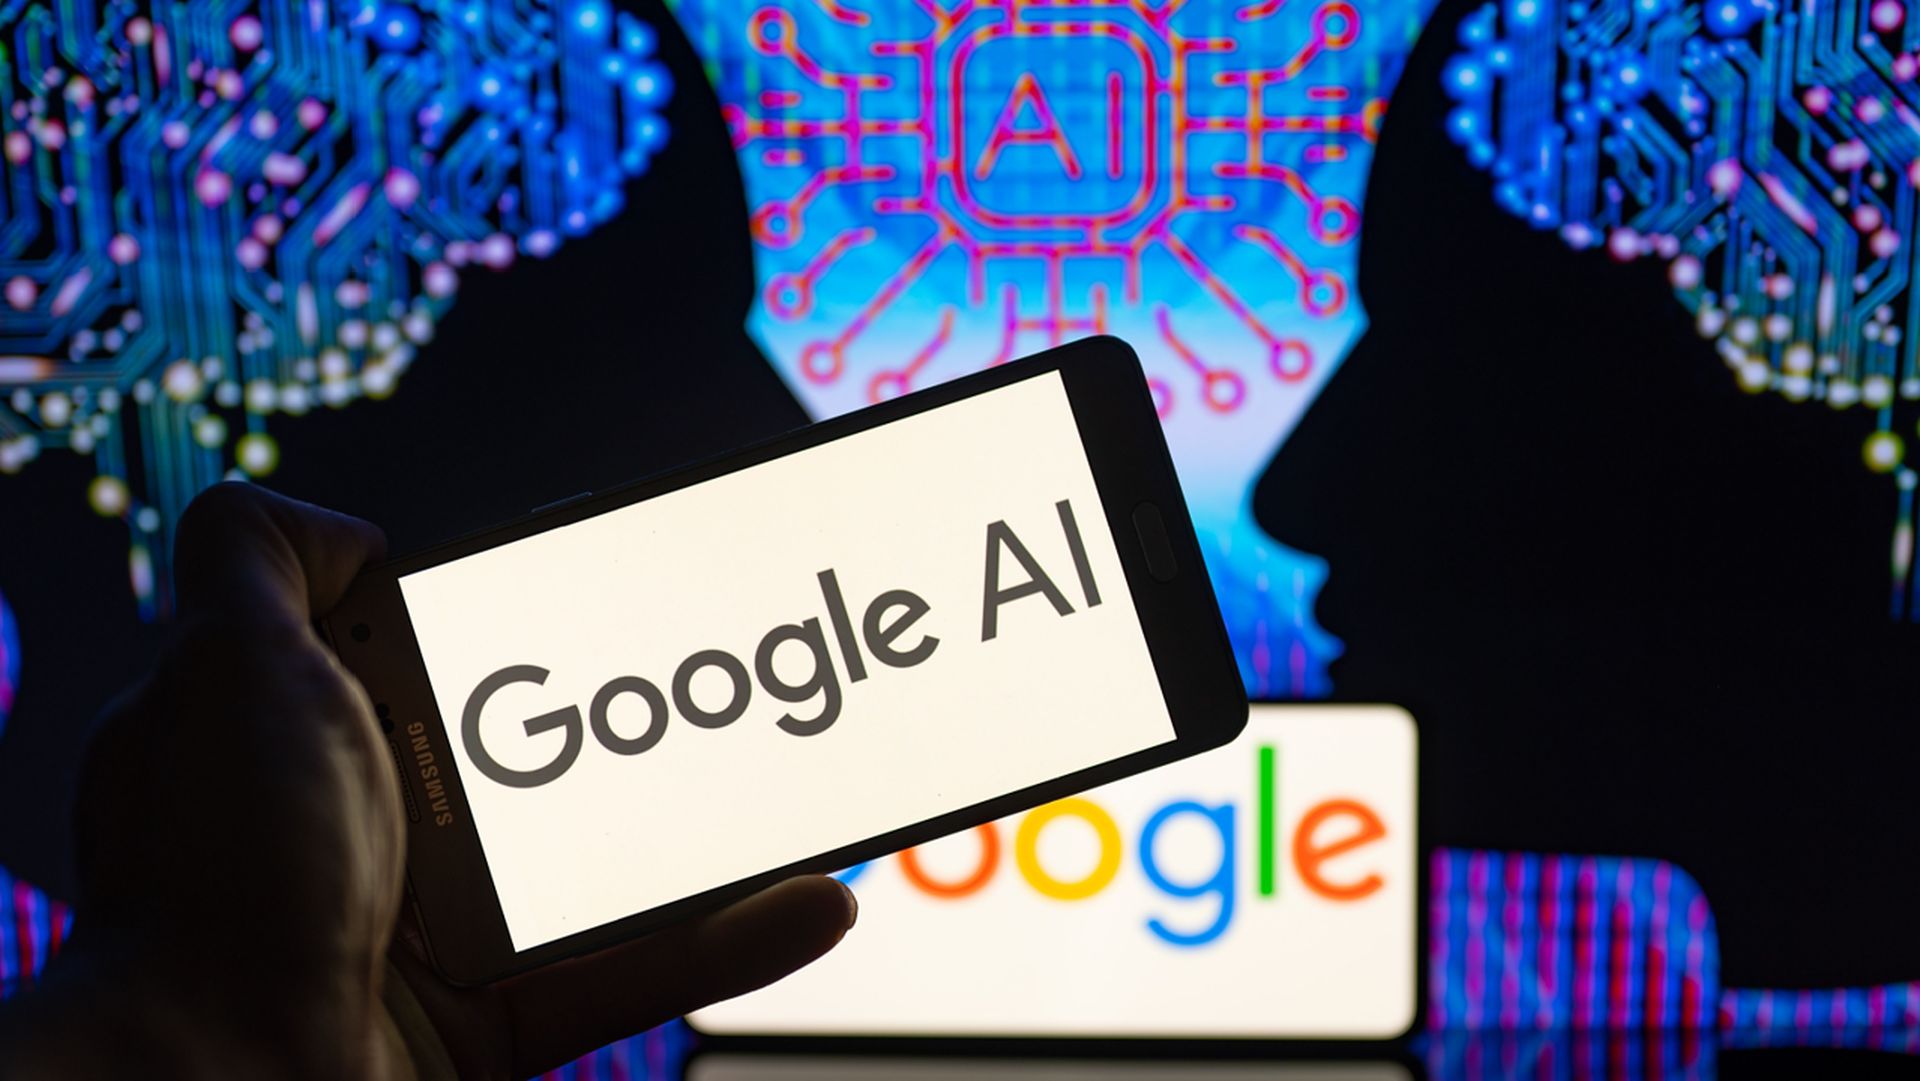 Moteur de recherche Google AI : Comment s’inscrire ?